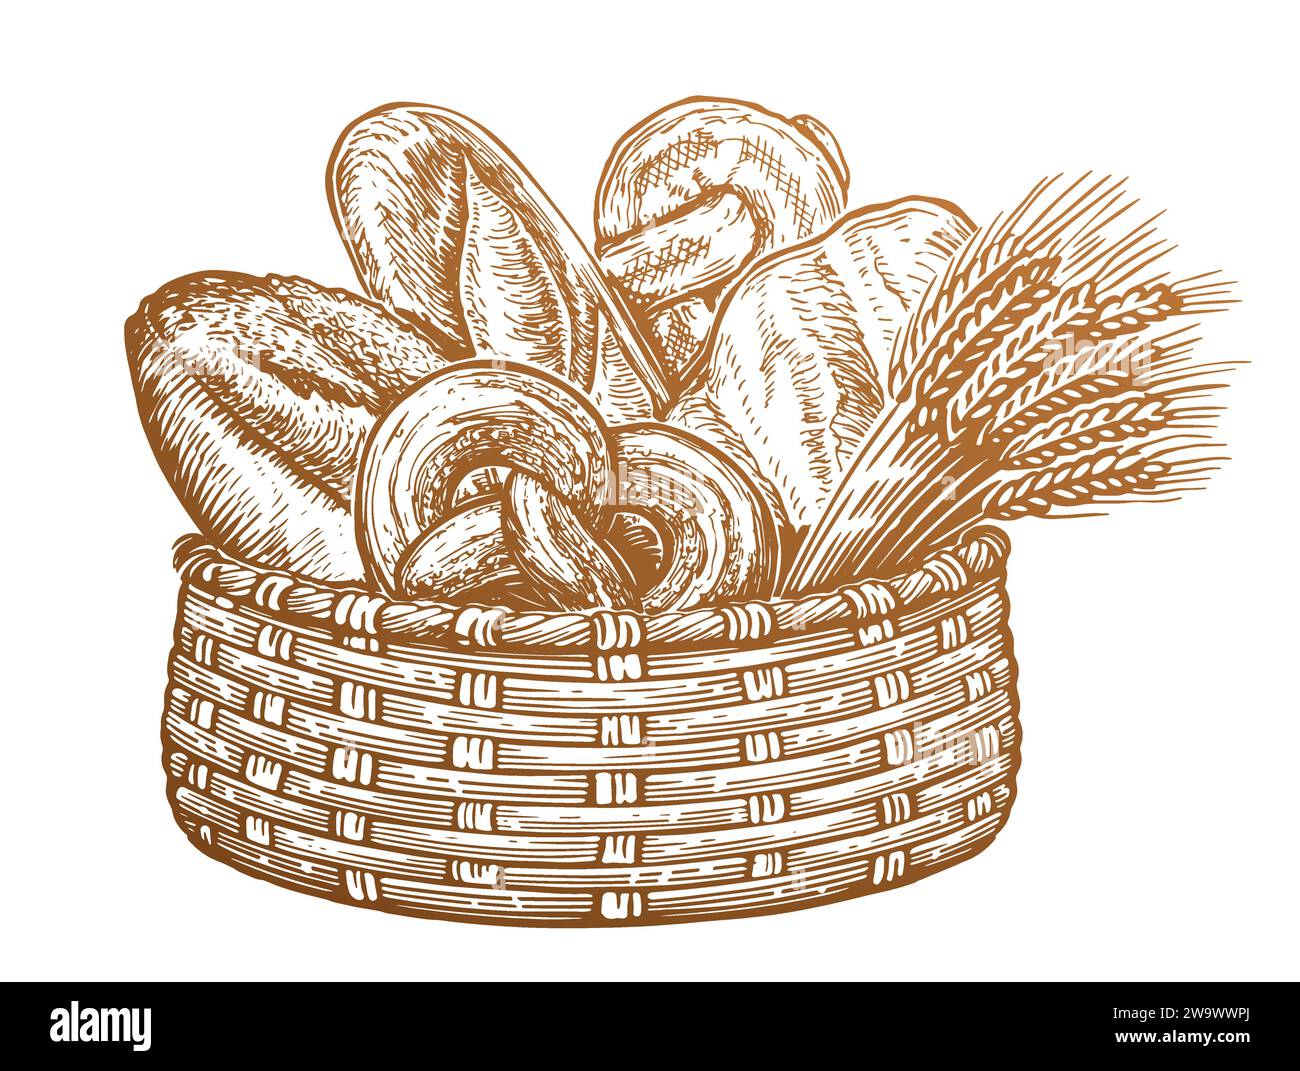 Vari tipi di pane e orecchie di grano nel cestino. Prodotti appena sfornati, disegno di disegni d'epoca Illustrazione Vettoriale